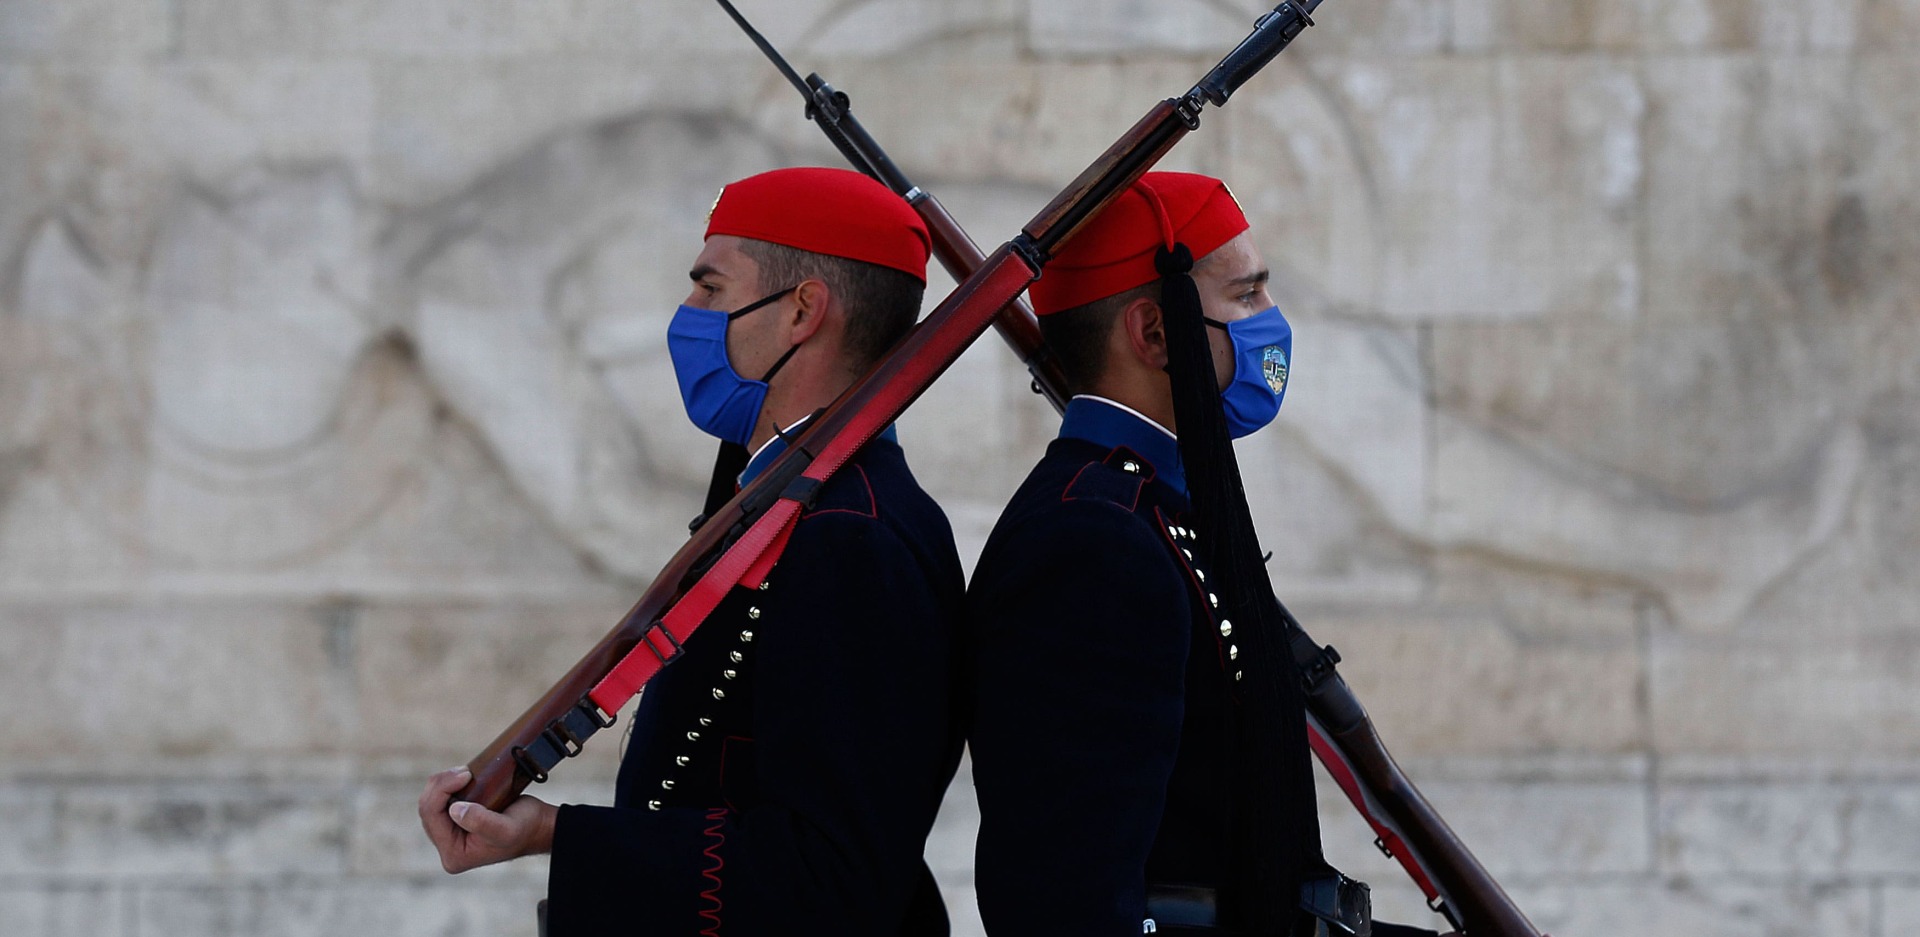 Μνημείο του Αγνώστου Στρατιώτη: Άνδρες της Προεδρικής Φρουράς με μάσκα για τον κορωνοϊό (16 Νοεμβρίου 2020)